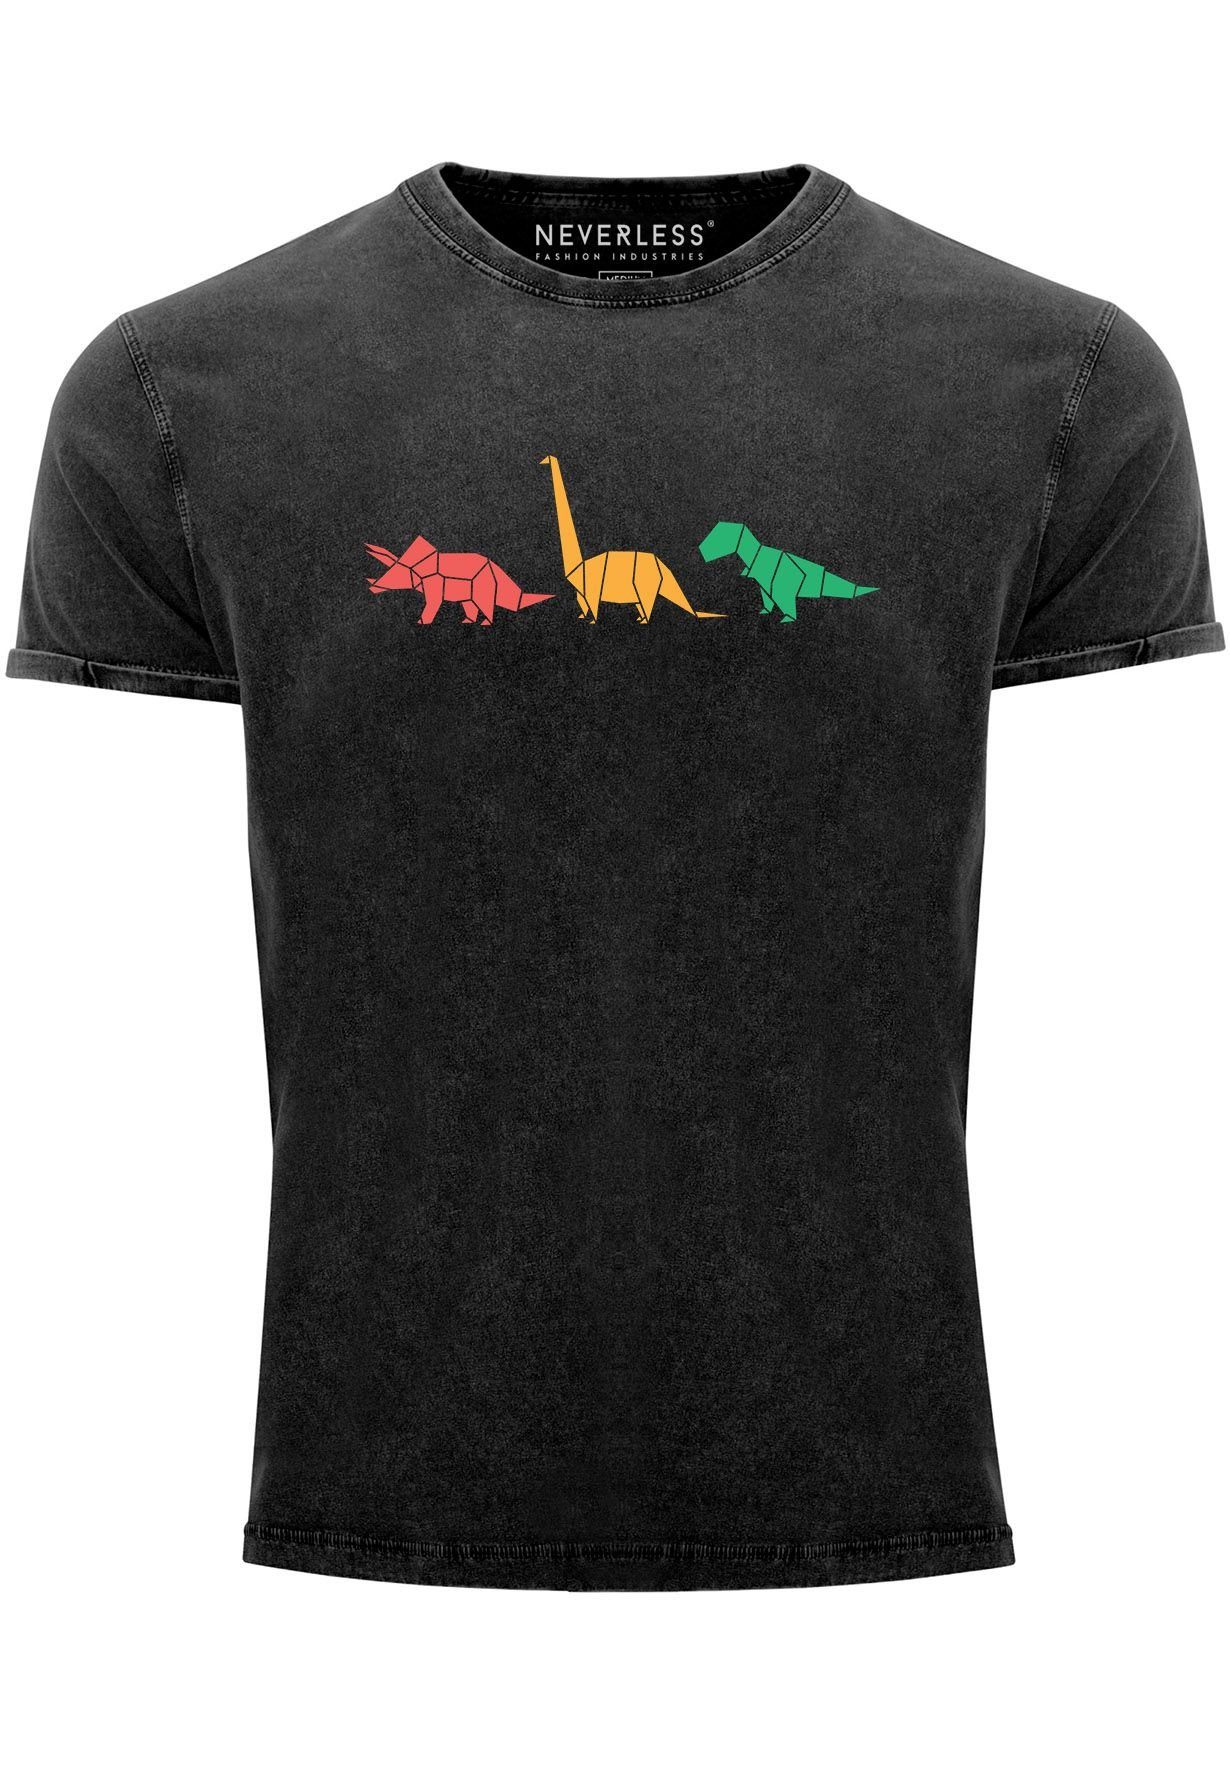 Neverless Print-Shirt Herren Vintage Shirt Dinosaurier Aufdruck Polygon Tiere Geometric Prin mit Print schwarz